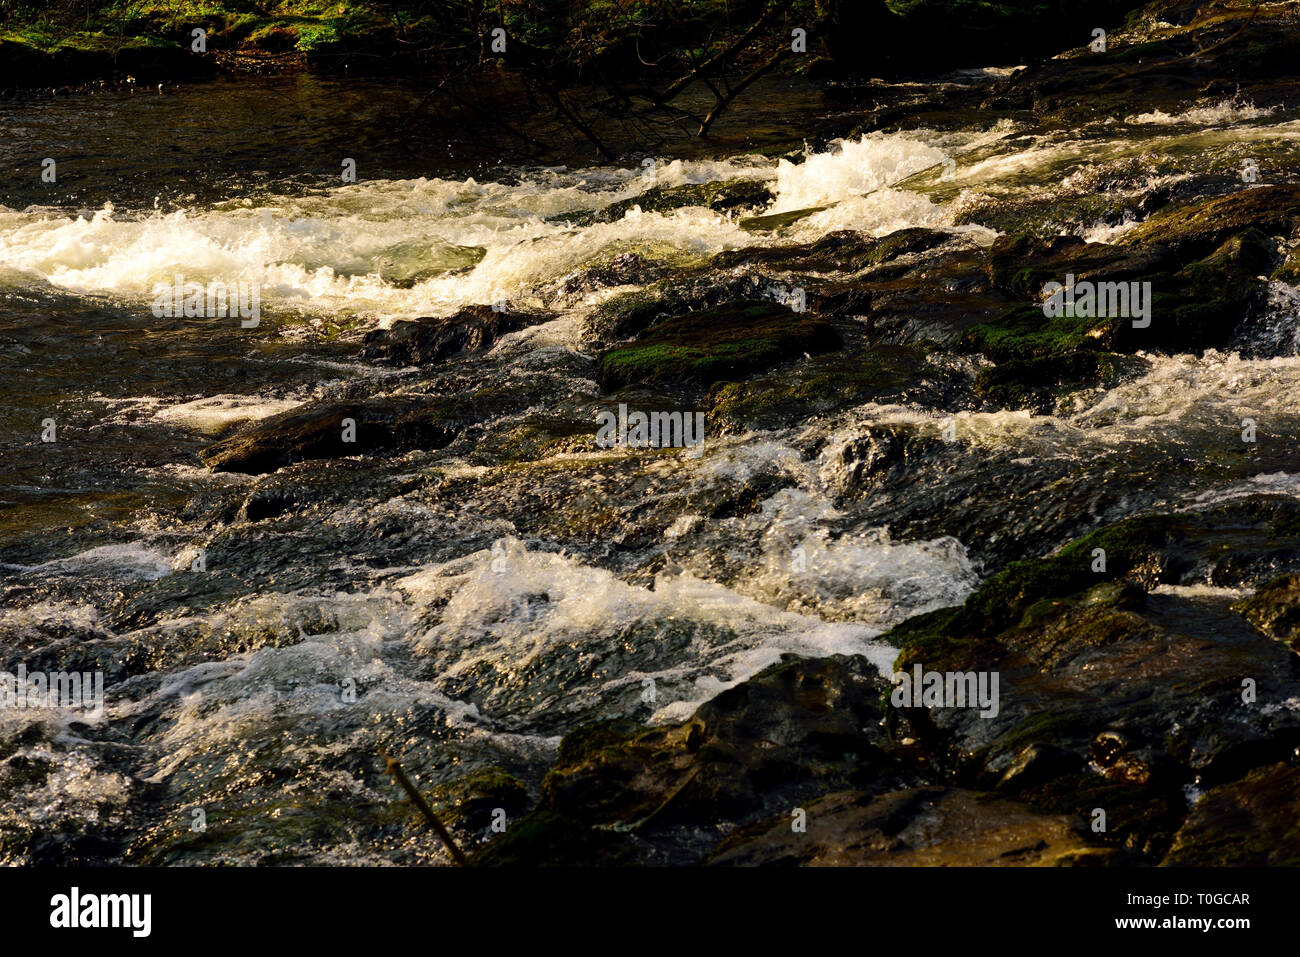 Un azud rocosas a lo largo de un caudaloso río. Foto de stock